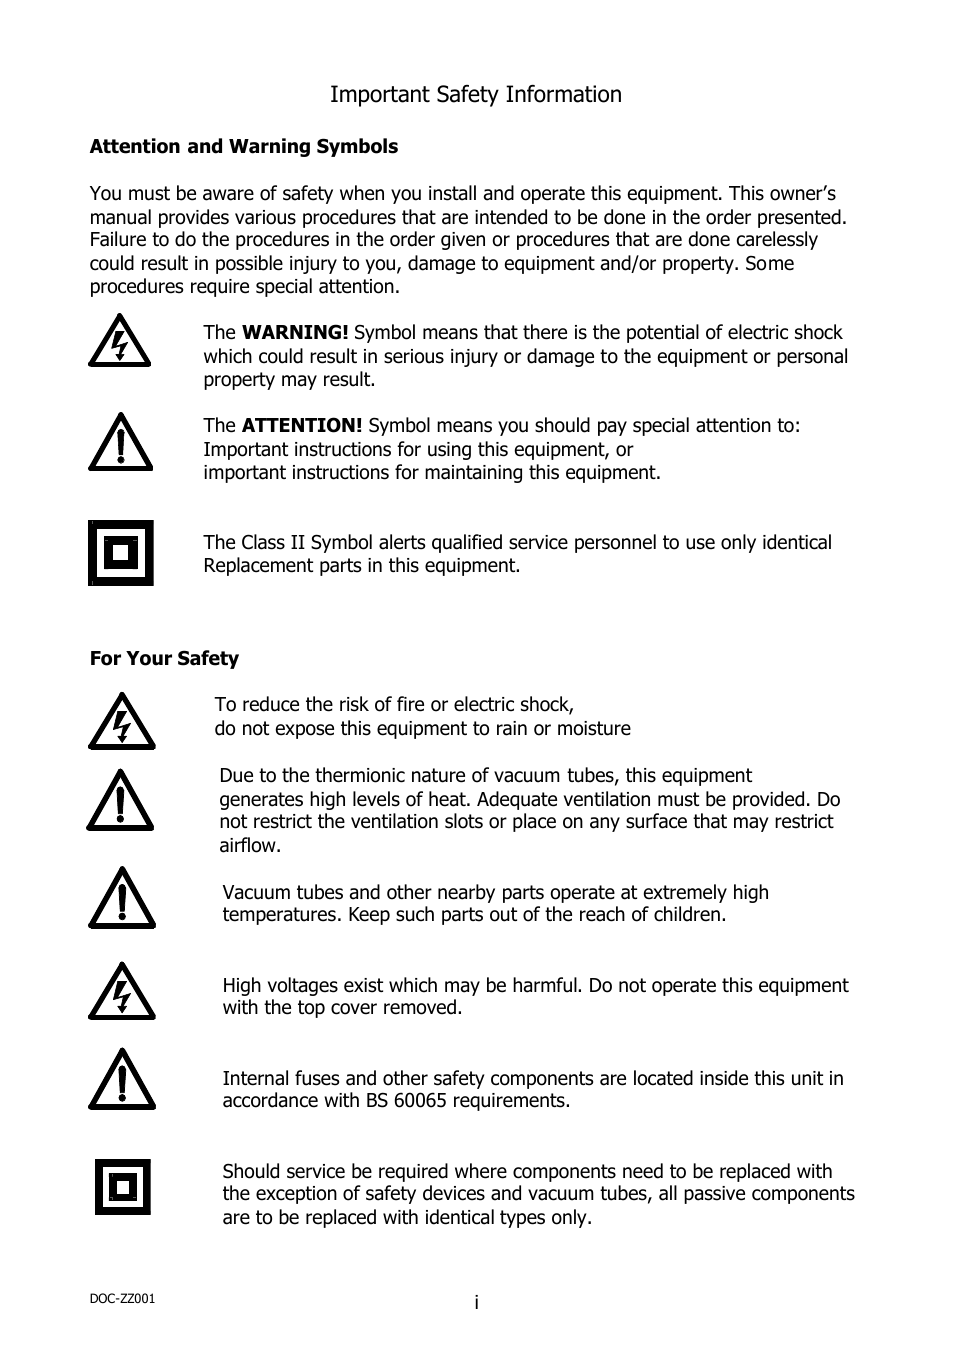 Warning Symbols